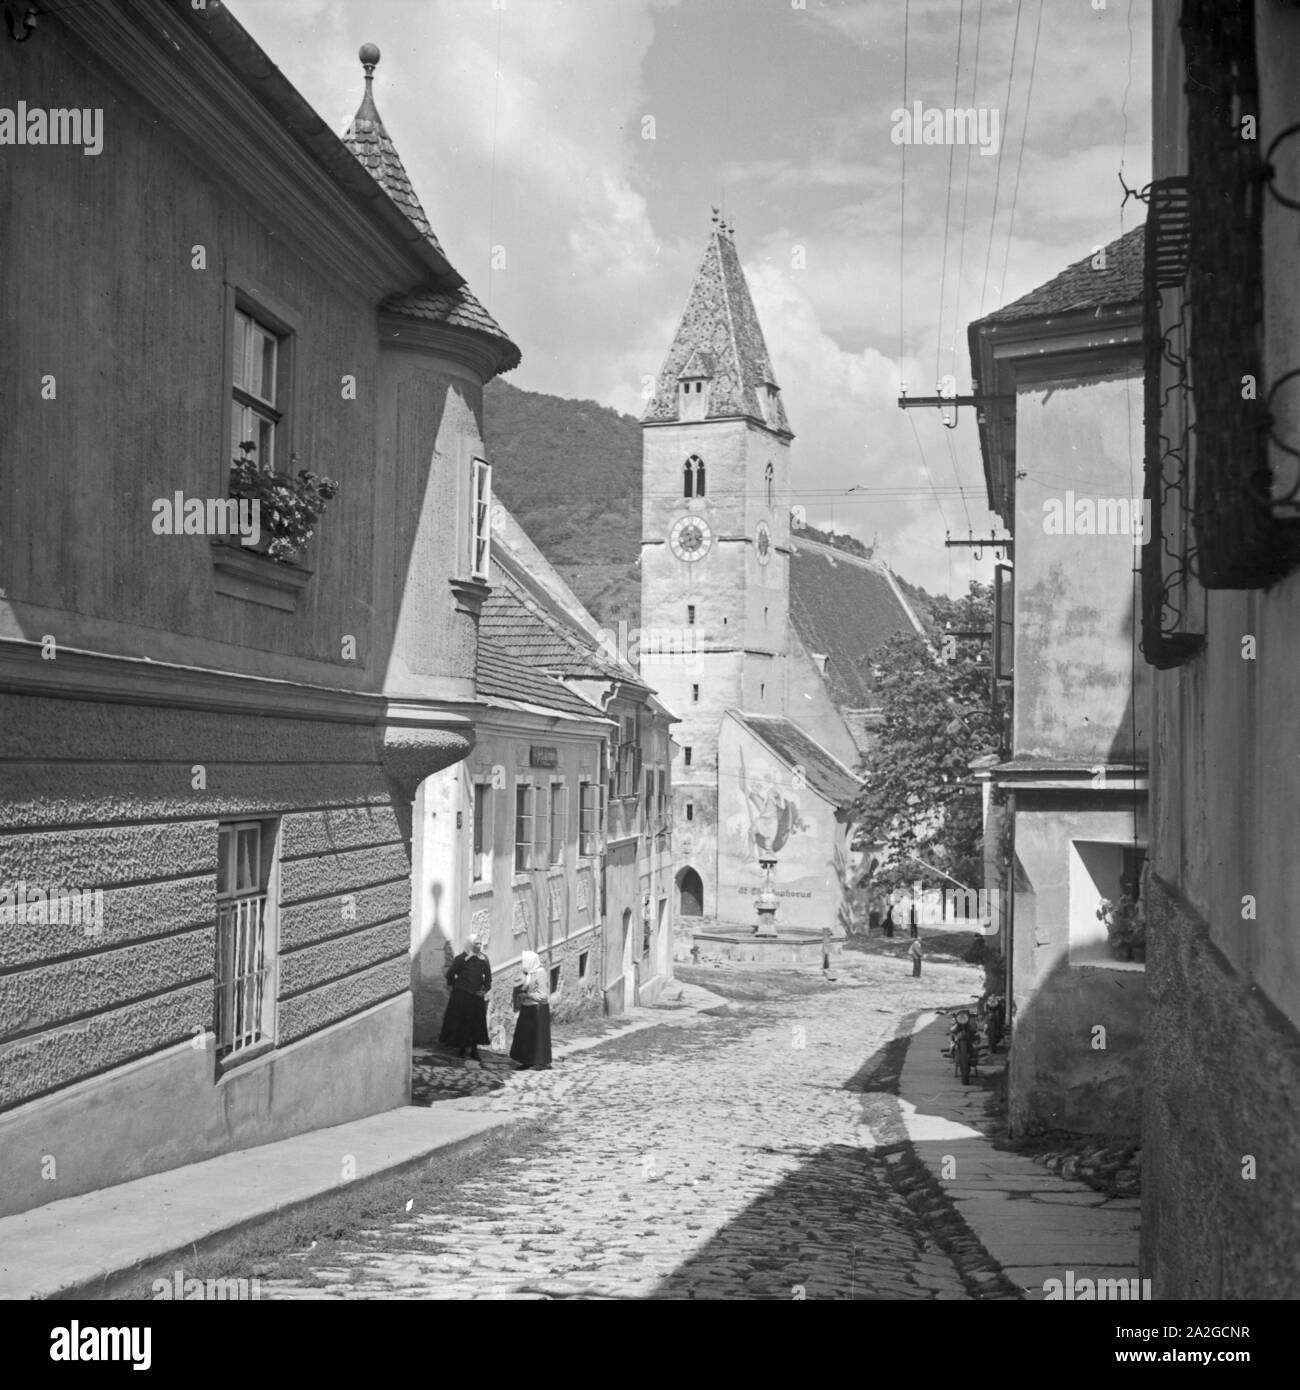 Die Pfarrkirche San Maurizio in der Gemeinde Sptz in Niederösterreich, 1930er Jahre. San Maurizio la chiesa di Spitz in Bassa Austria, 1930s. Foto Stock